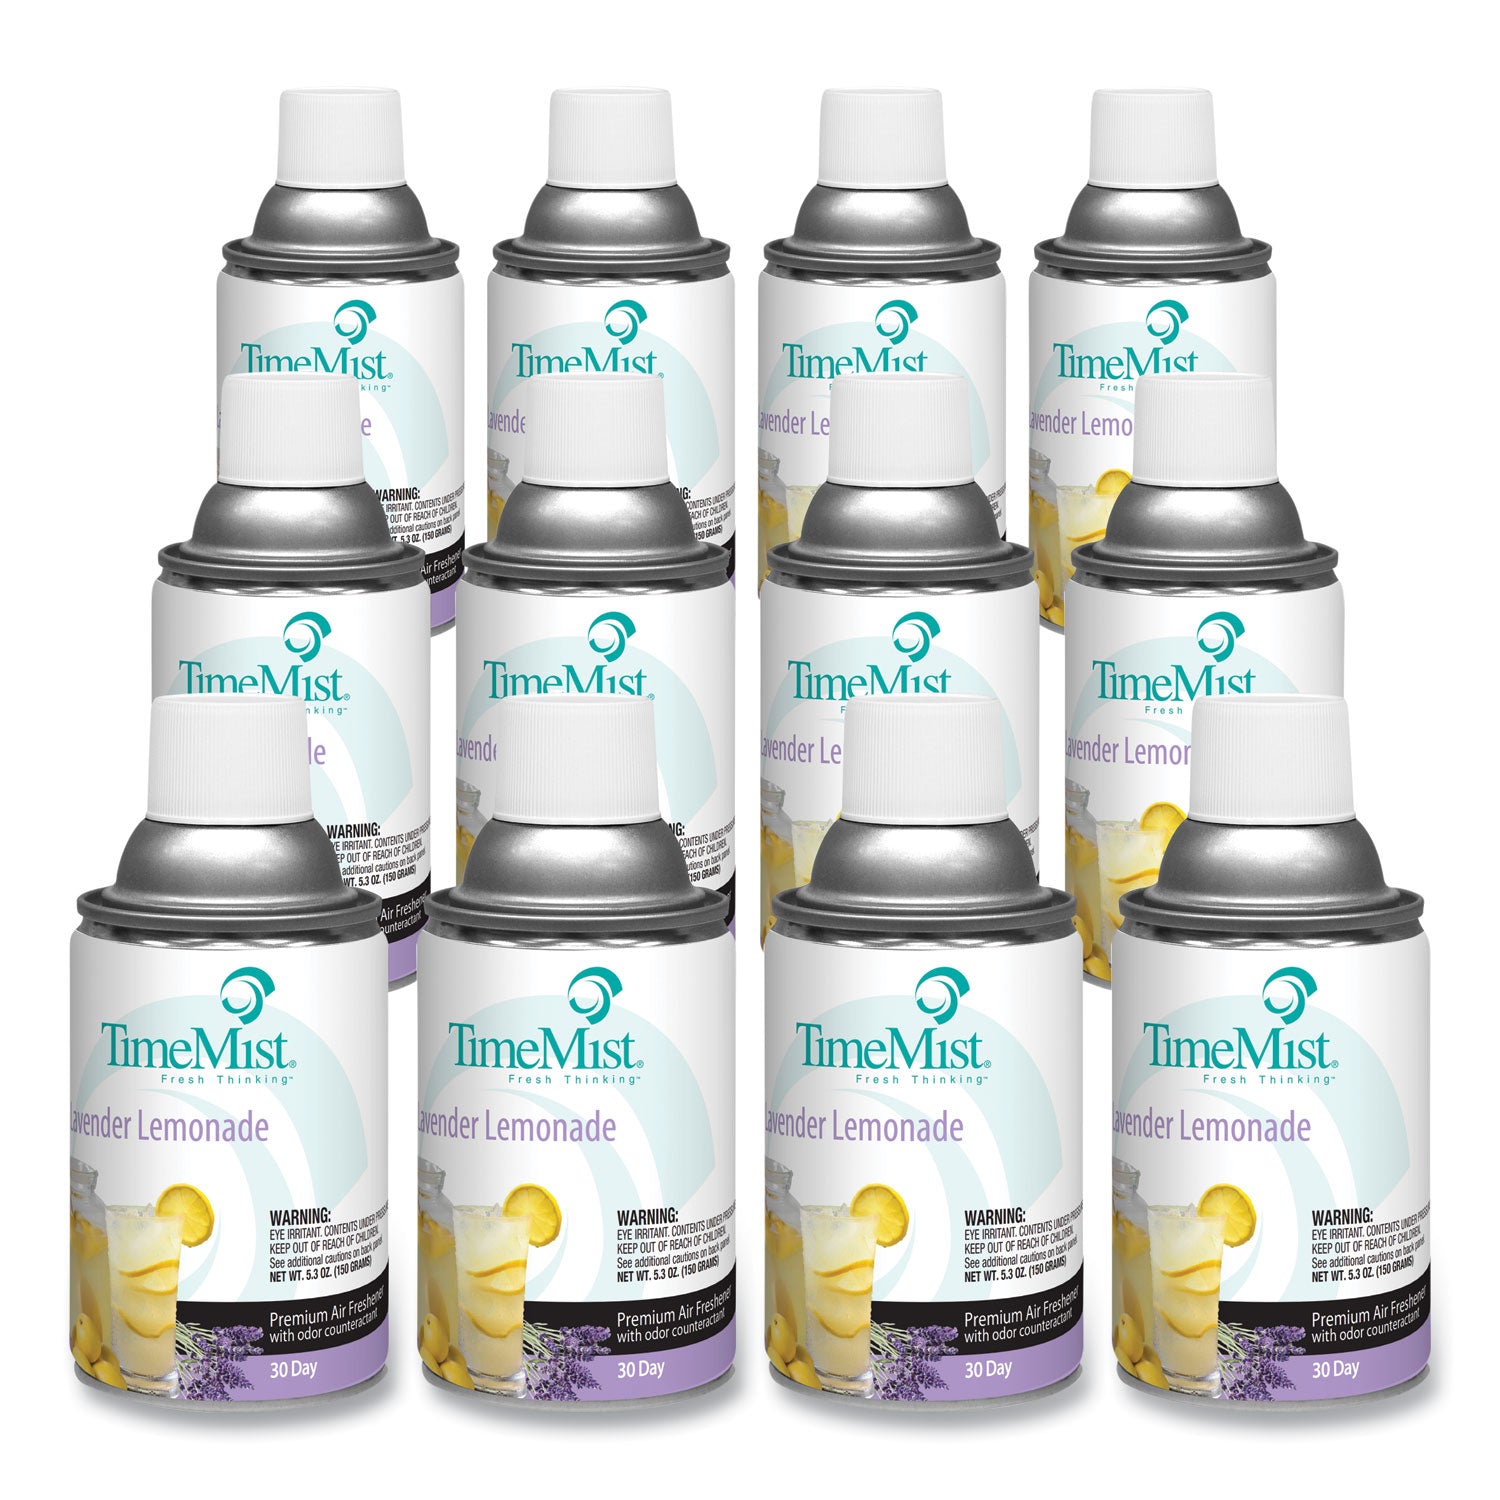 Premium Metered Air Freshener Refill, Lavender Lemonade, 5.3 oz Aerosol Spray, 12/Carton - 1